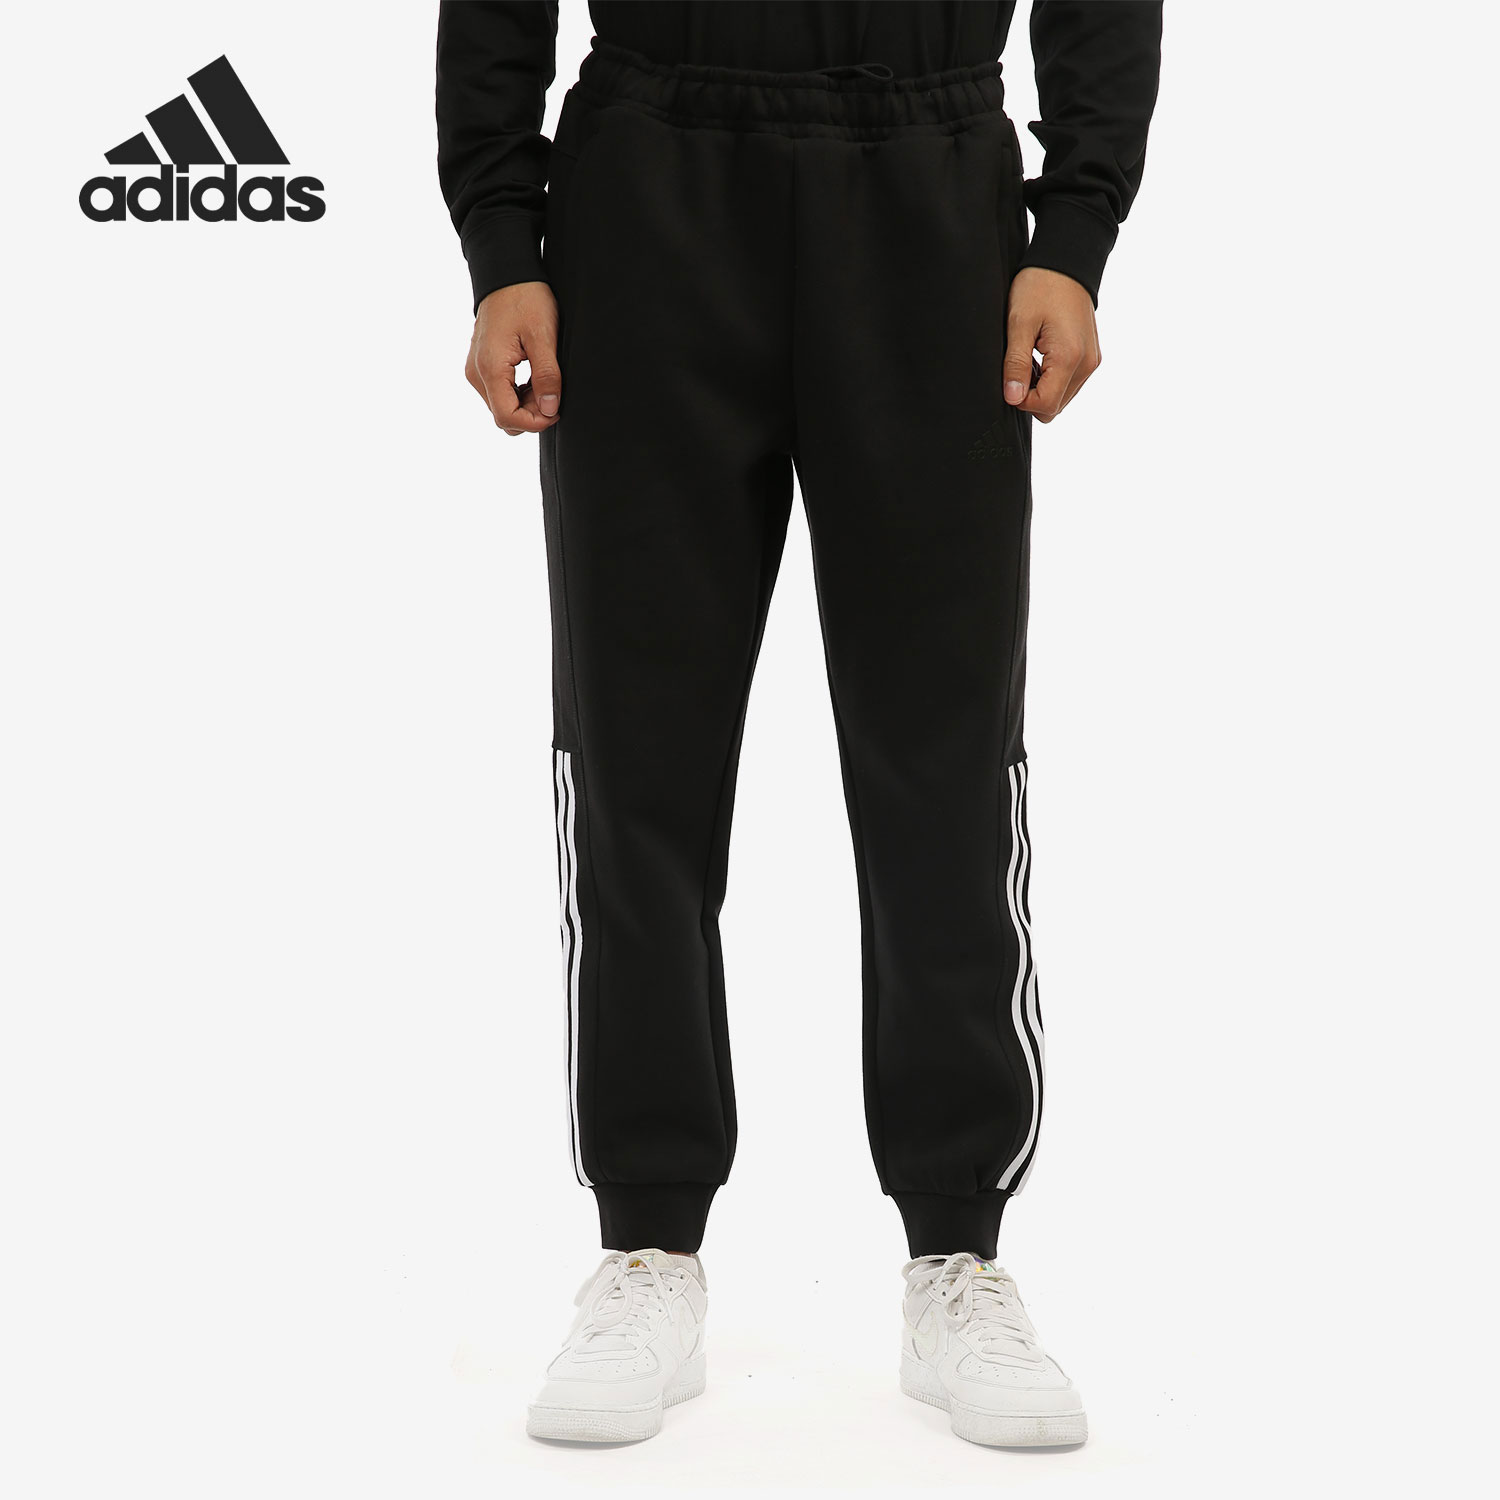 Adidas/阿迪达斯官方正品FI DK SLIM PNT男子运动针织长裤 H39227